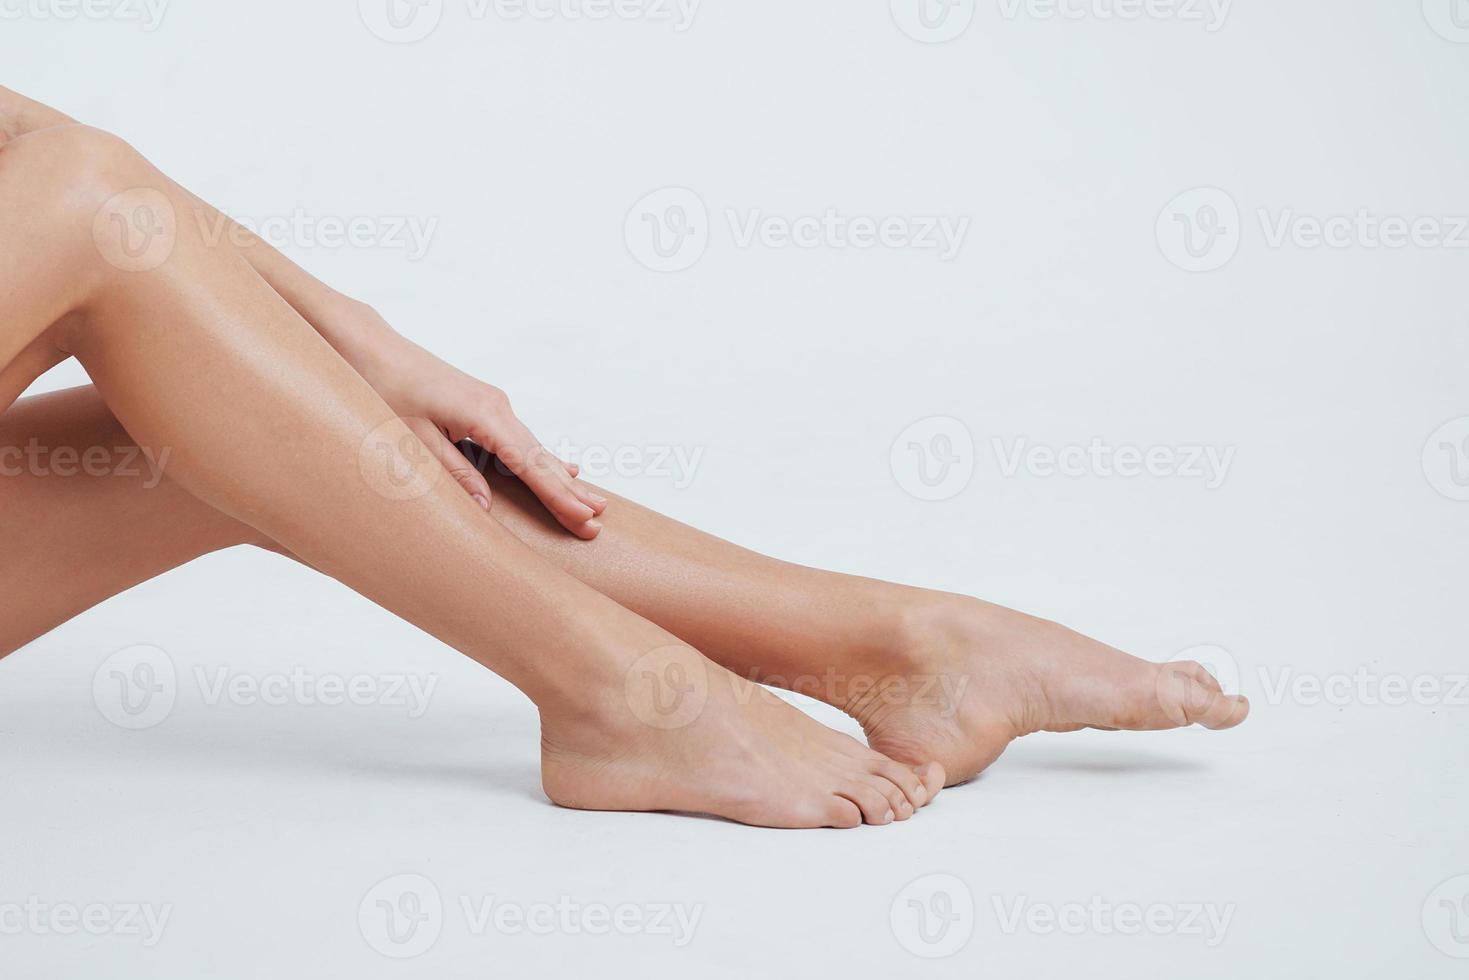 Nahaufnahme Foto von weiblichen glatten Beinen mit der Hand darauf und weißem Hintergrund dahinter